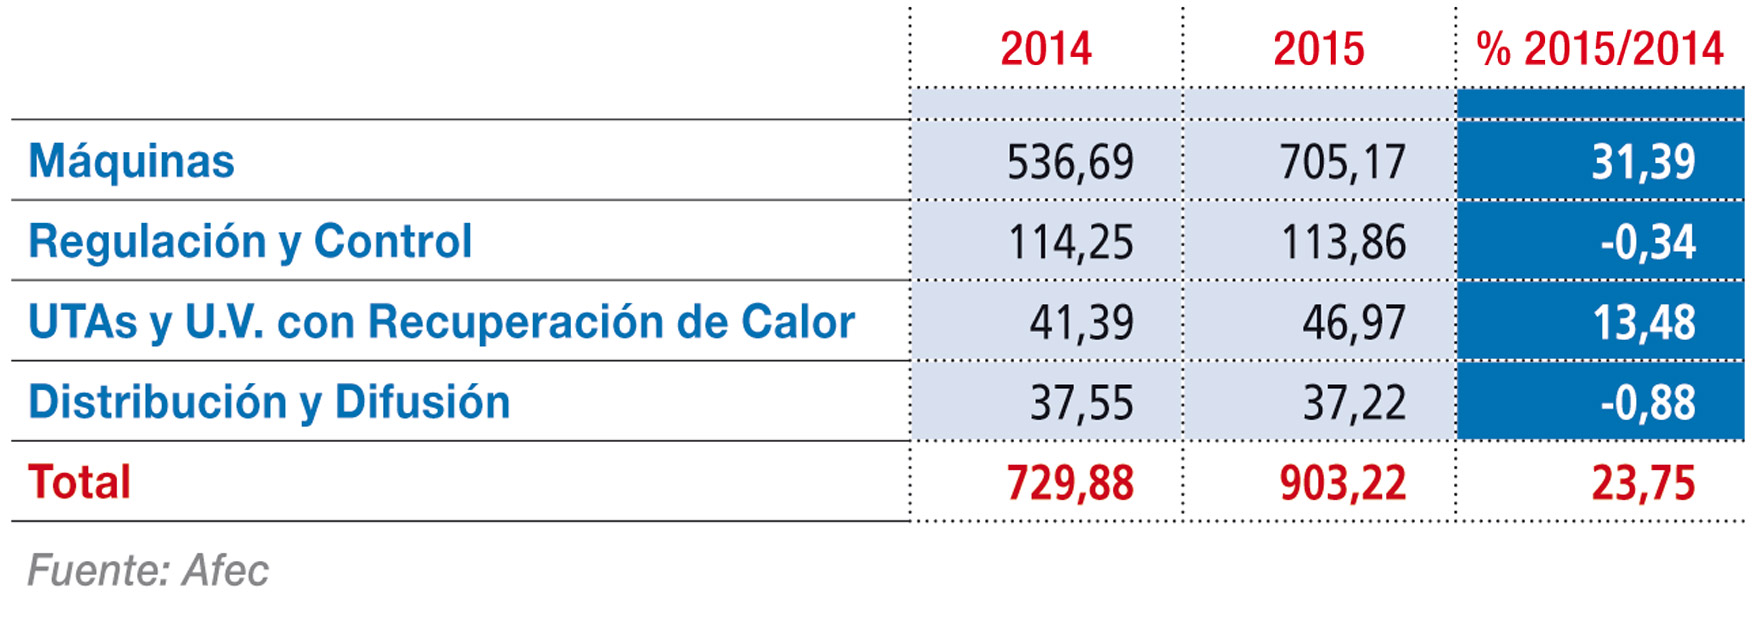 Evolución del mercado de climatización en España en 2015